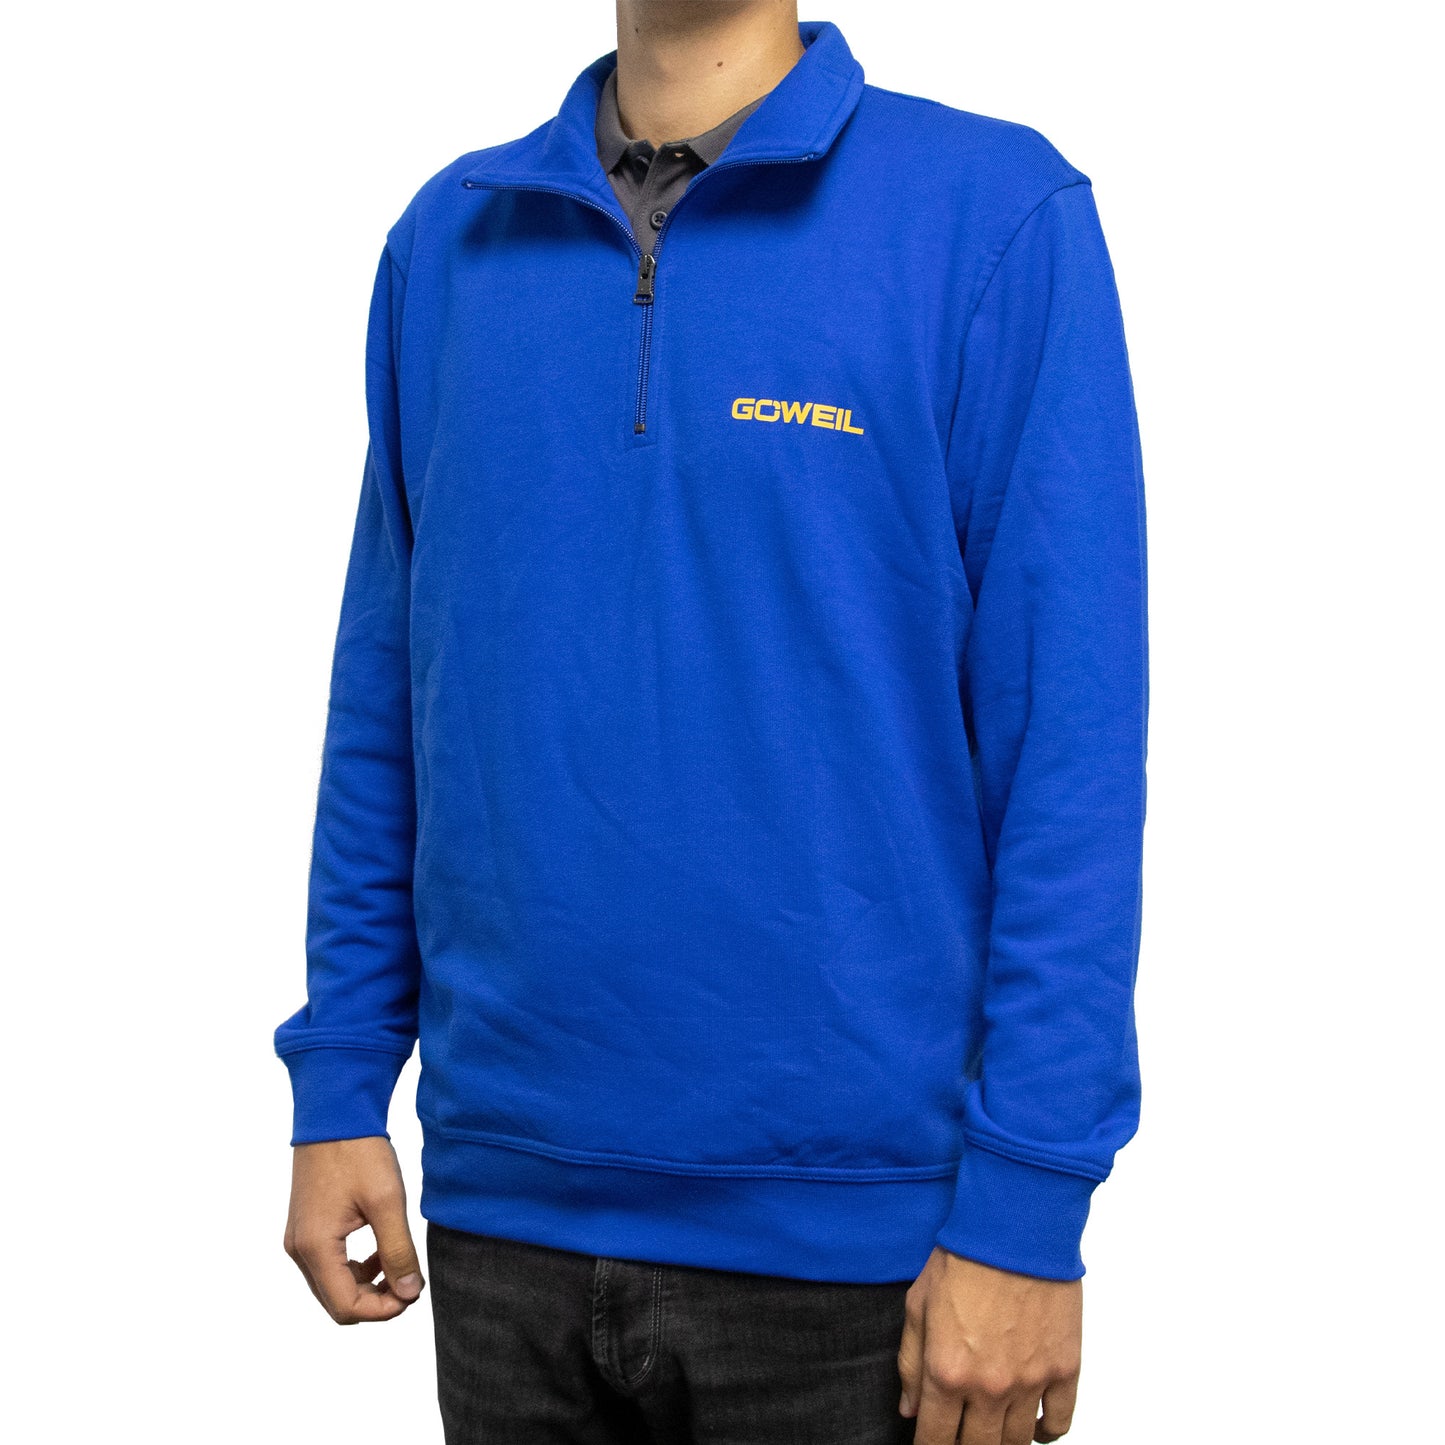 Der schicke GÖWEIL Pullover in blau mit Logo-Aufdruck